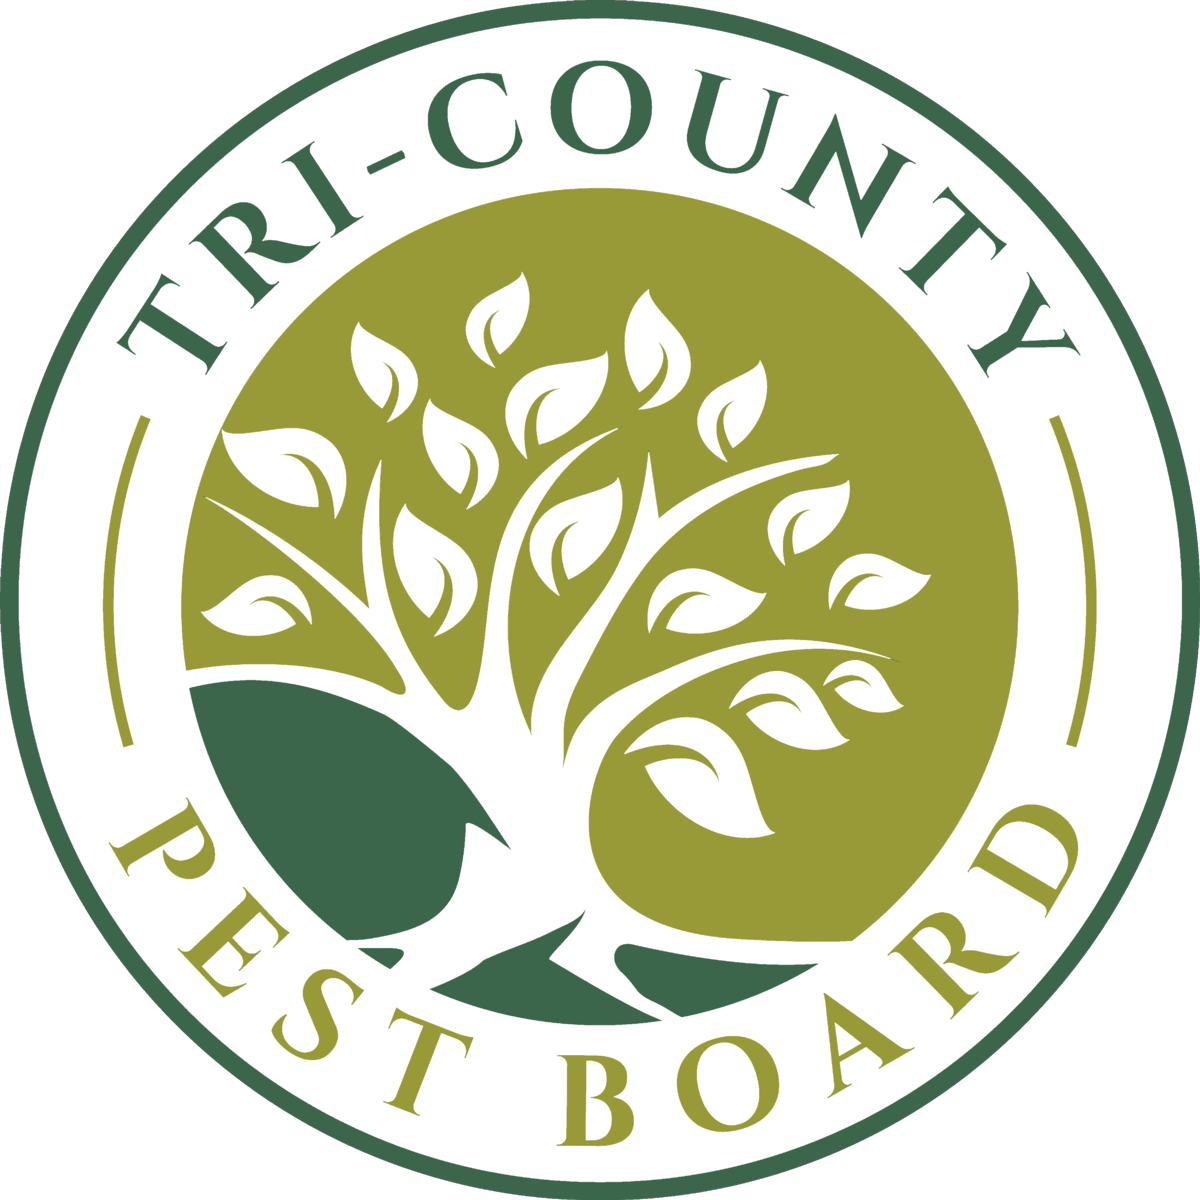 Tri-County Pest Board Director